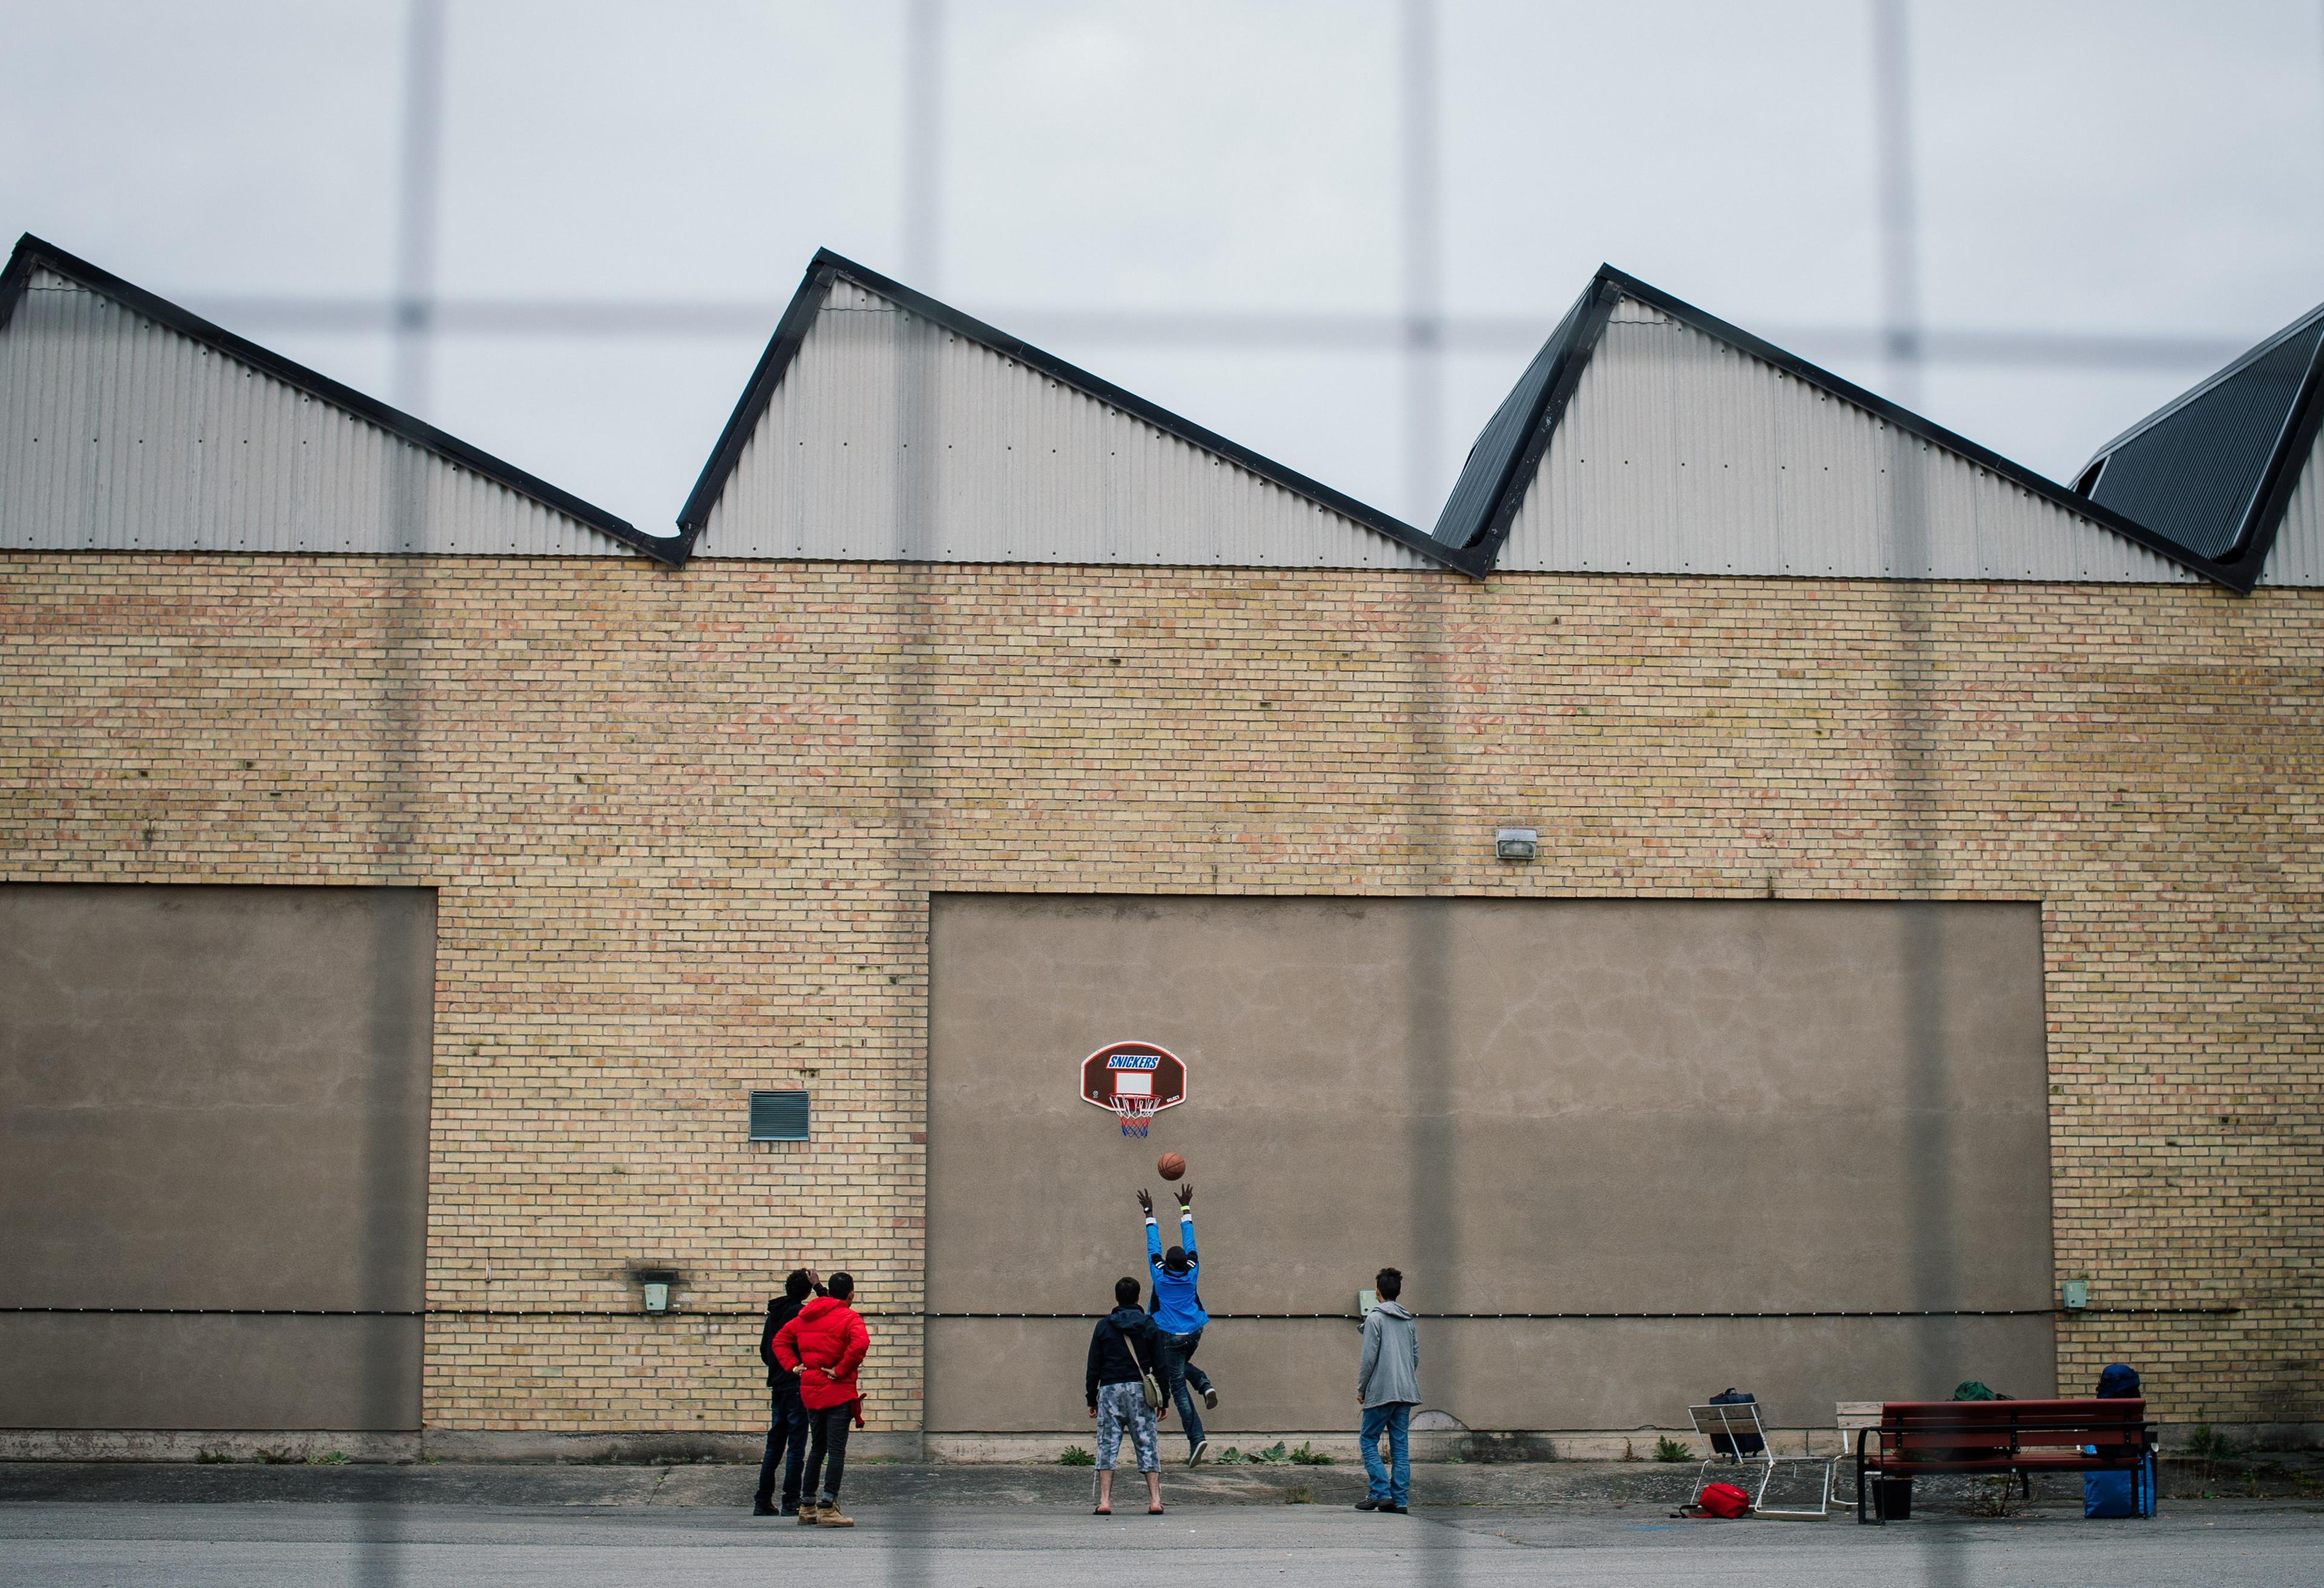 Förläggningen i Sundbyberg. Här väntar flyktingar för att få besked om asyl. (Foto: Jonathan Nackstrand /AFP/Getty Images)